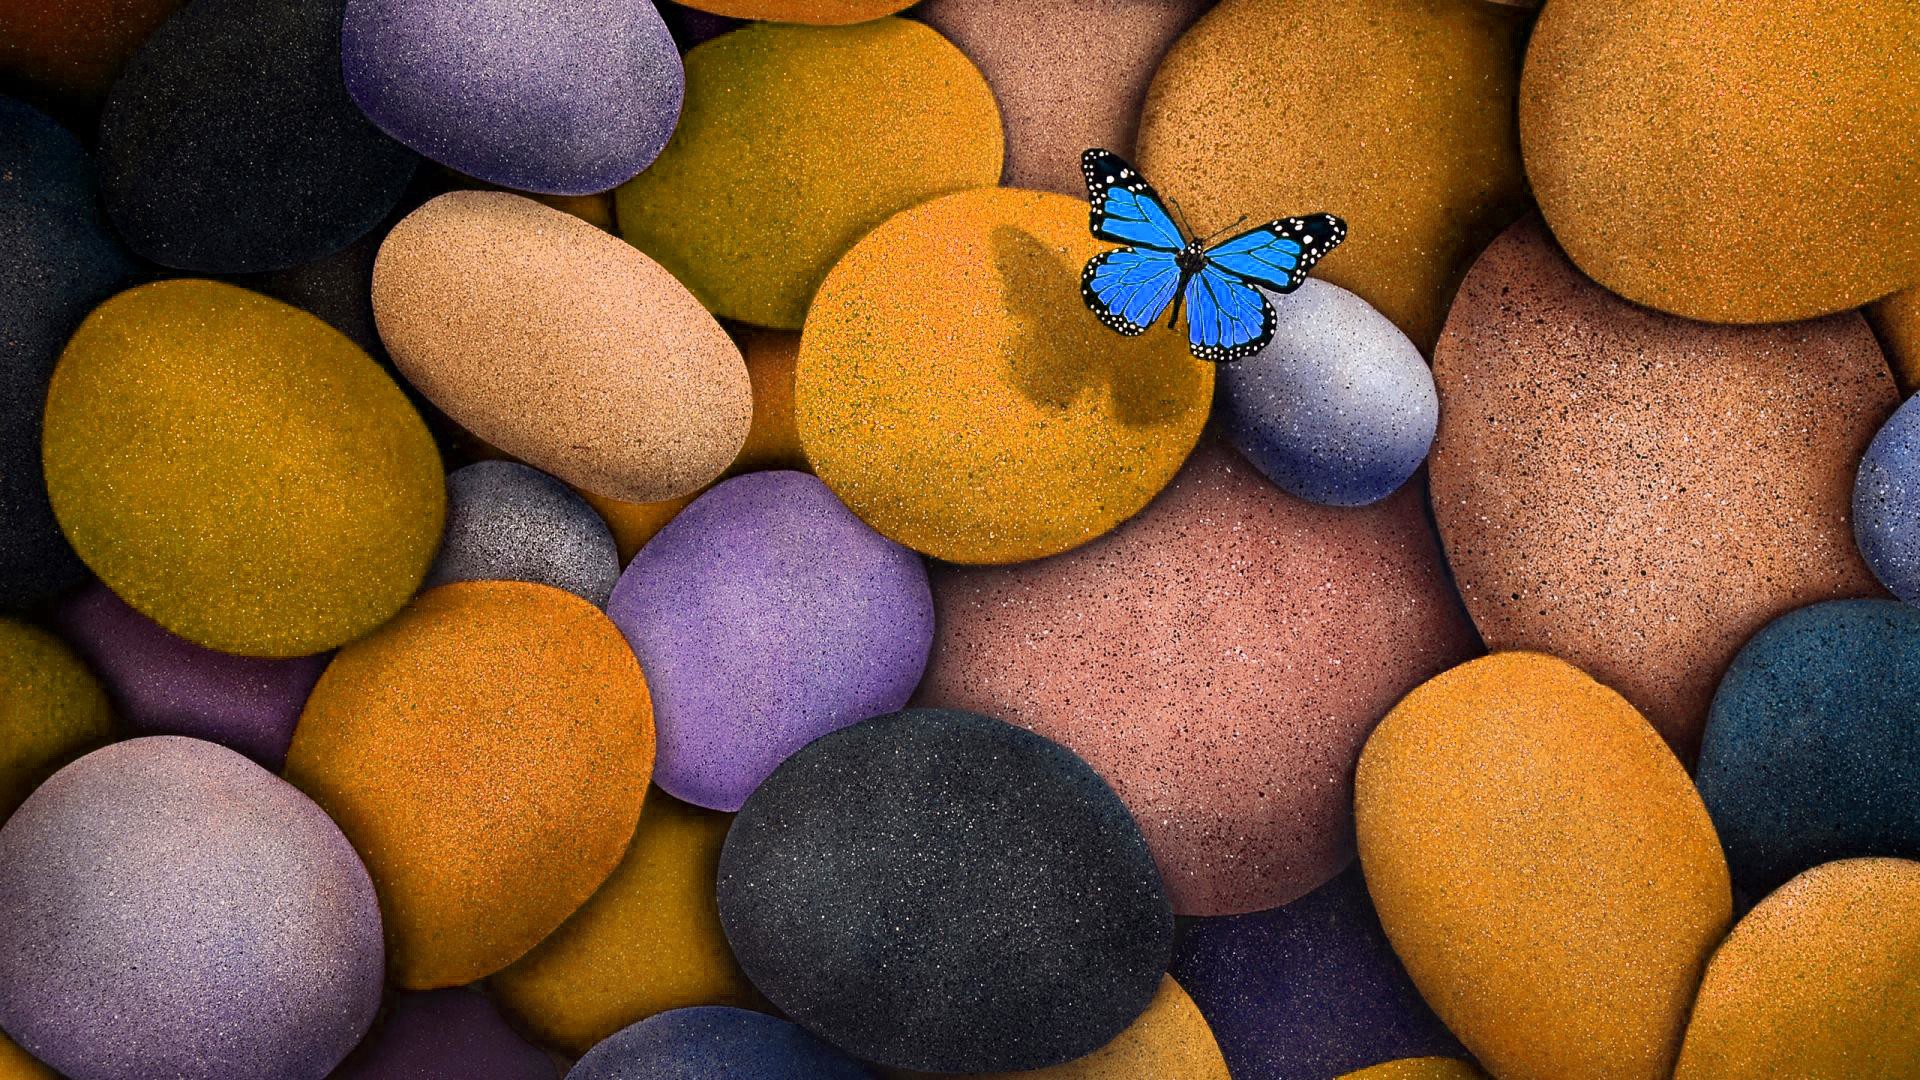 Hình nền 3D con bướm đẹp cho Laptop: Con bướm, loài vật tượng trưng cho sự tinh tế và thanh cao, trở thành chủ đề trong những hình nền 3D cho laptop. Tải về và đặt làm hình nền cho máy tính của bạn, hình ảnh với độ phân giải cao sẽ khiến cho chiếc laptop của bạn trở nên tươi sáng và nhẹ nhàng.